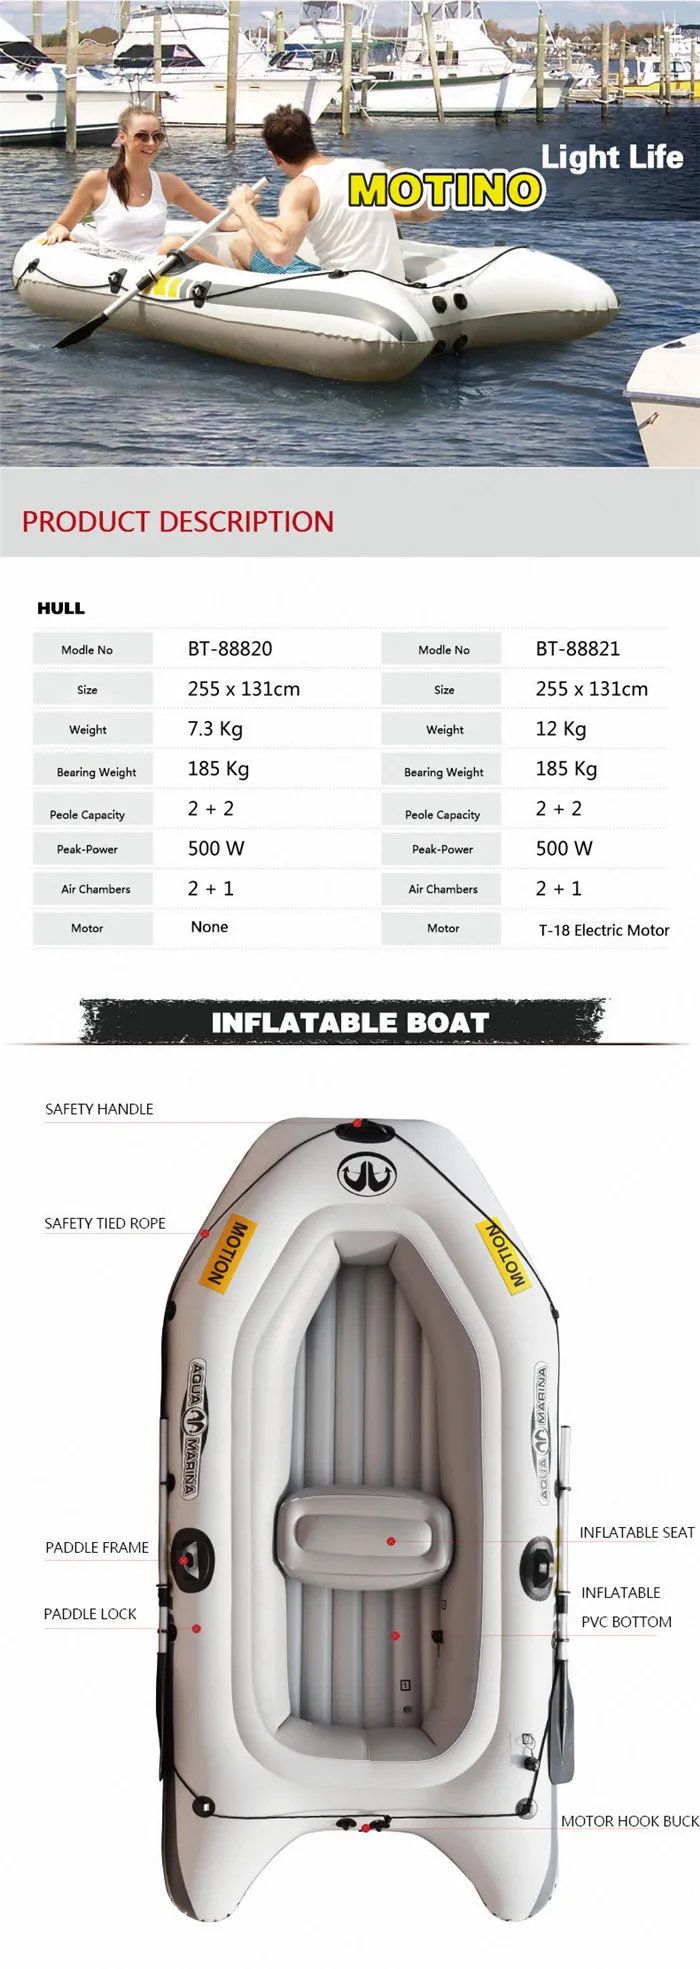 Аква-Марина движение новая спортивная байдарка надувная лодка для рыбалки надувные лодки 2 человека с веслом ТОЛСТАЯ ПВХ лодка с веслом